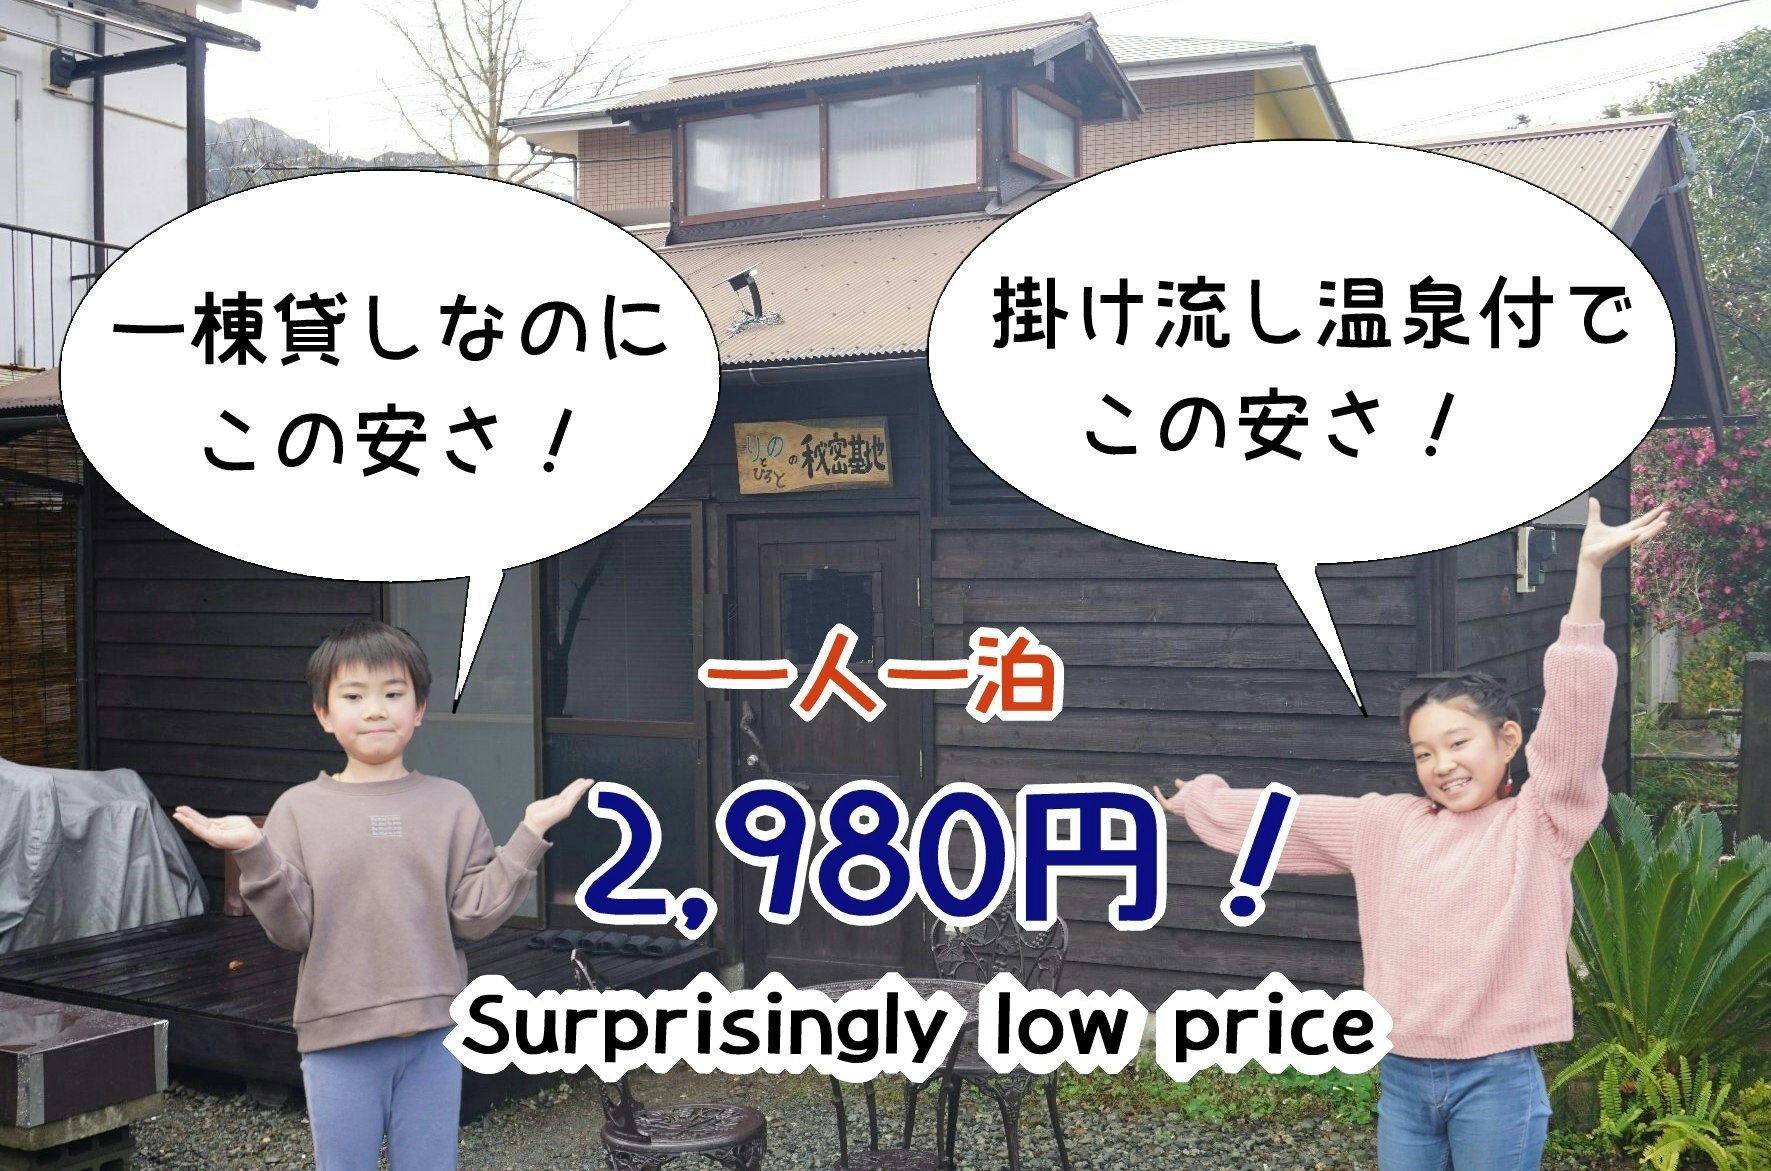 一軒丸貸しなのに、驚きの激安プライス 温泉付き1泊2,980円!